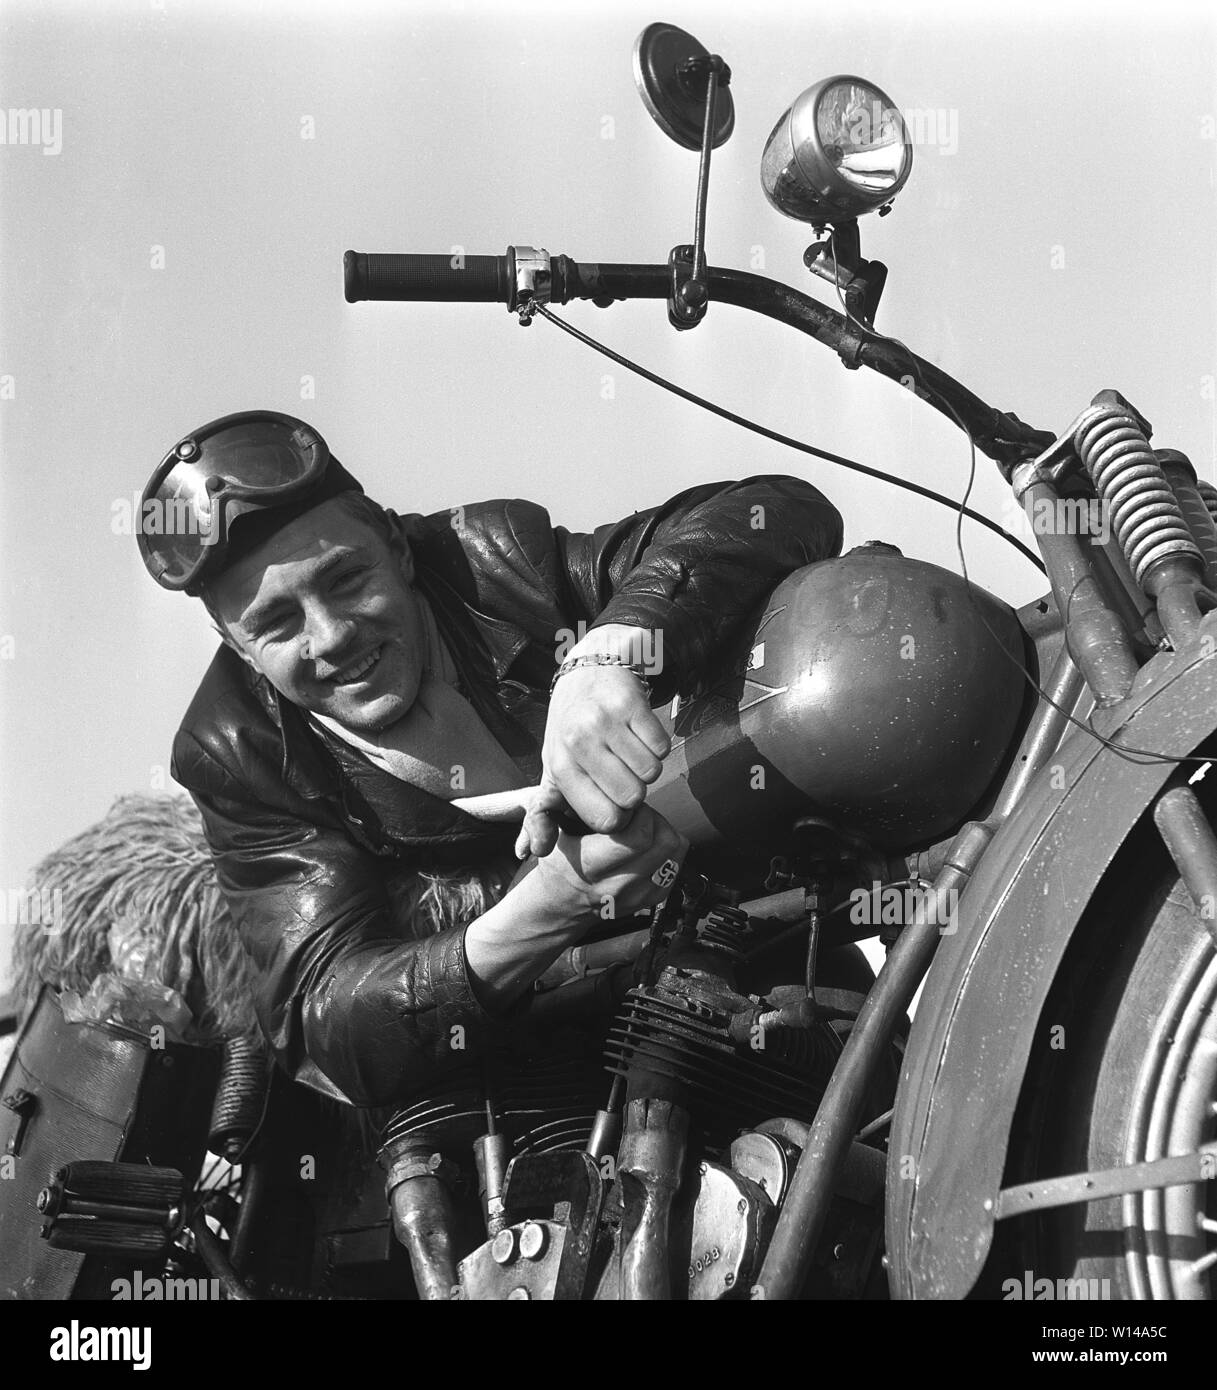 Der Motorradfahrer in den 1950er Jahren. Ein junger Mann mit Brille und einem Leder Cap mit seinem Motorrad. Das Motorrad ist der amerikanischen Firma Excelsior in Chicago und das Modell ist Super-X 1925, und war Amerika erste Motorrad mit Zweizylinder-V-Motor. Schweden 1950 s Ref 10-09-11 Stockfoto